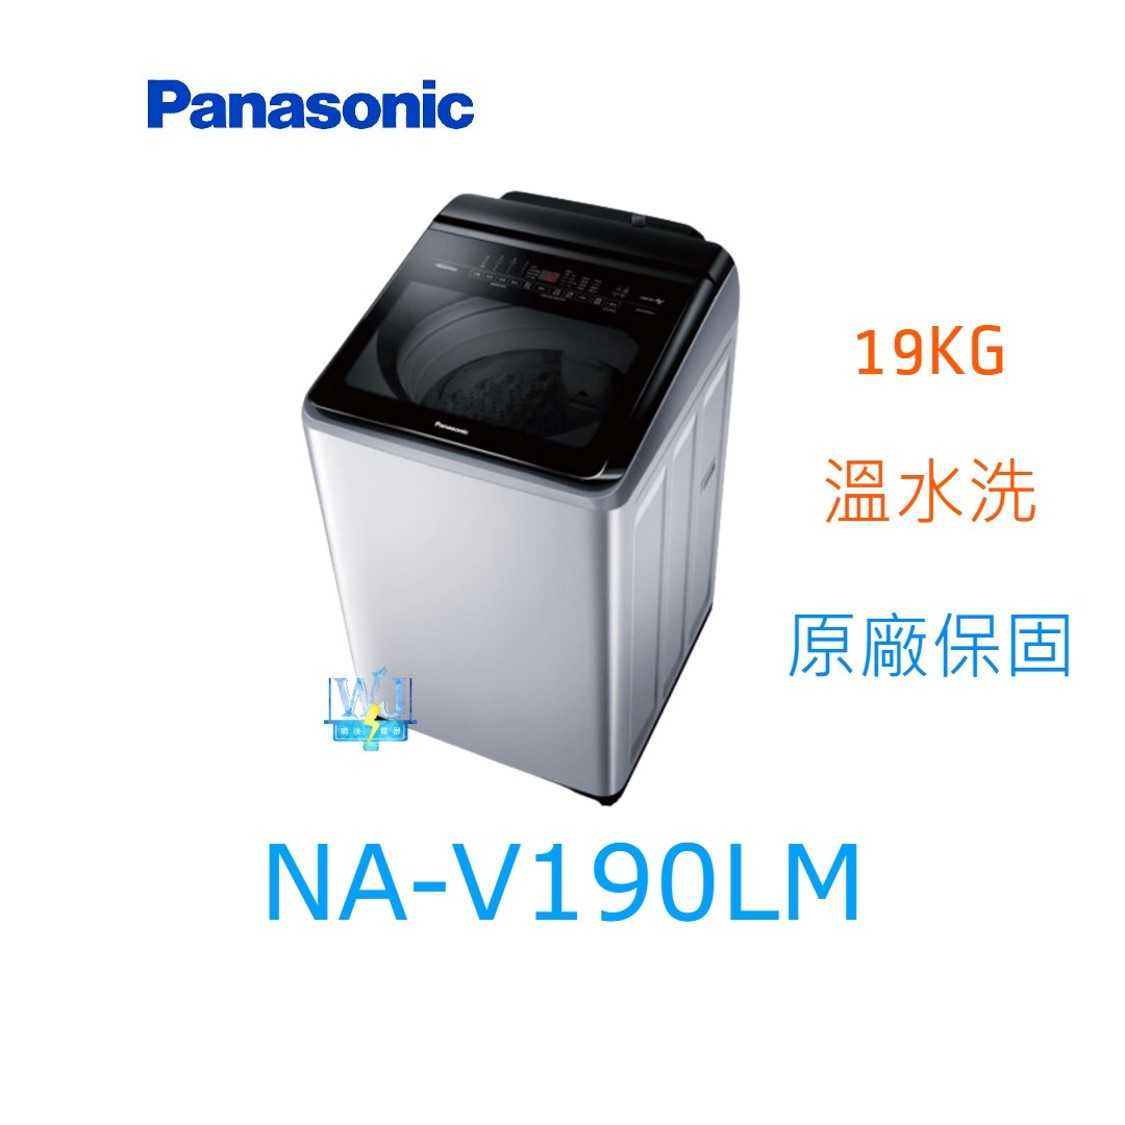 ☆可議價【暐竣電器】Panasonic國際牌 NAV190LM 直立式洗衣機 NA-V190LM 溫水洗 變頻洗衣機